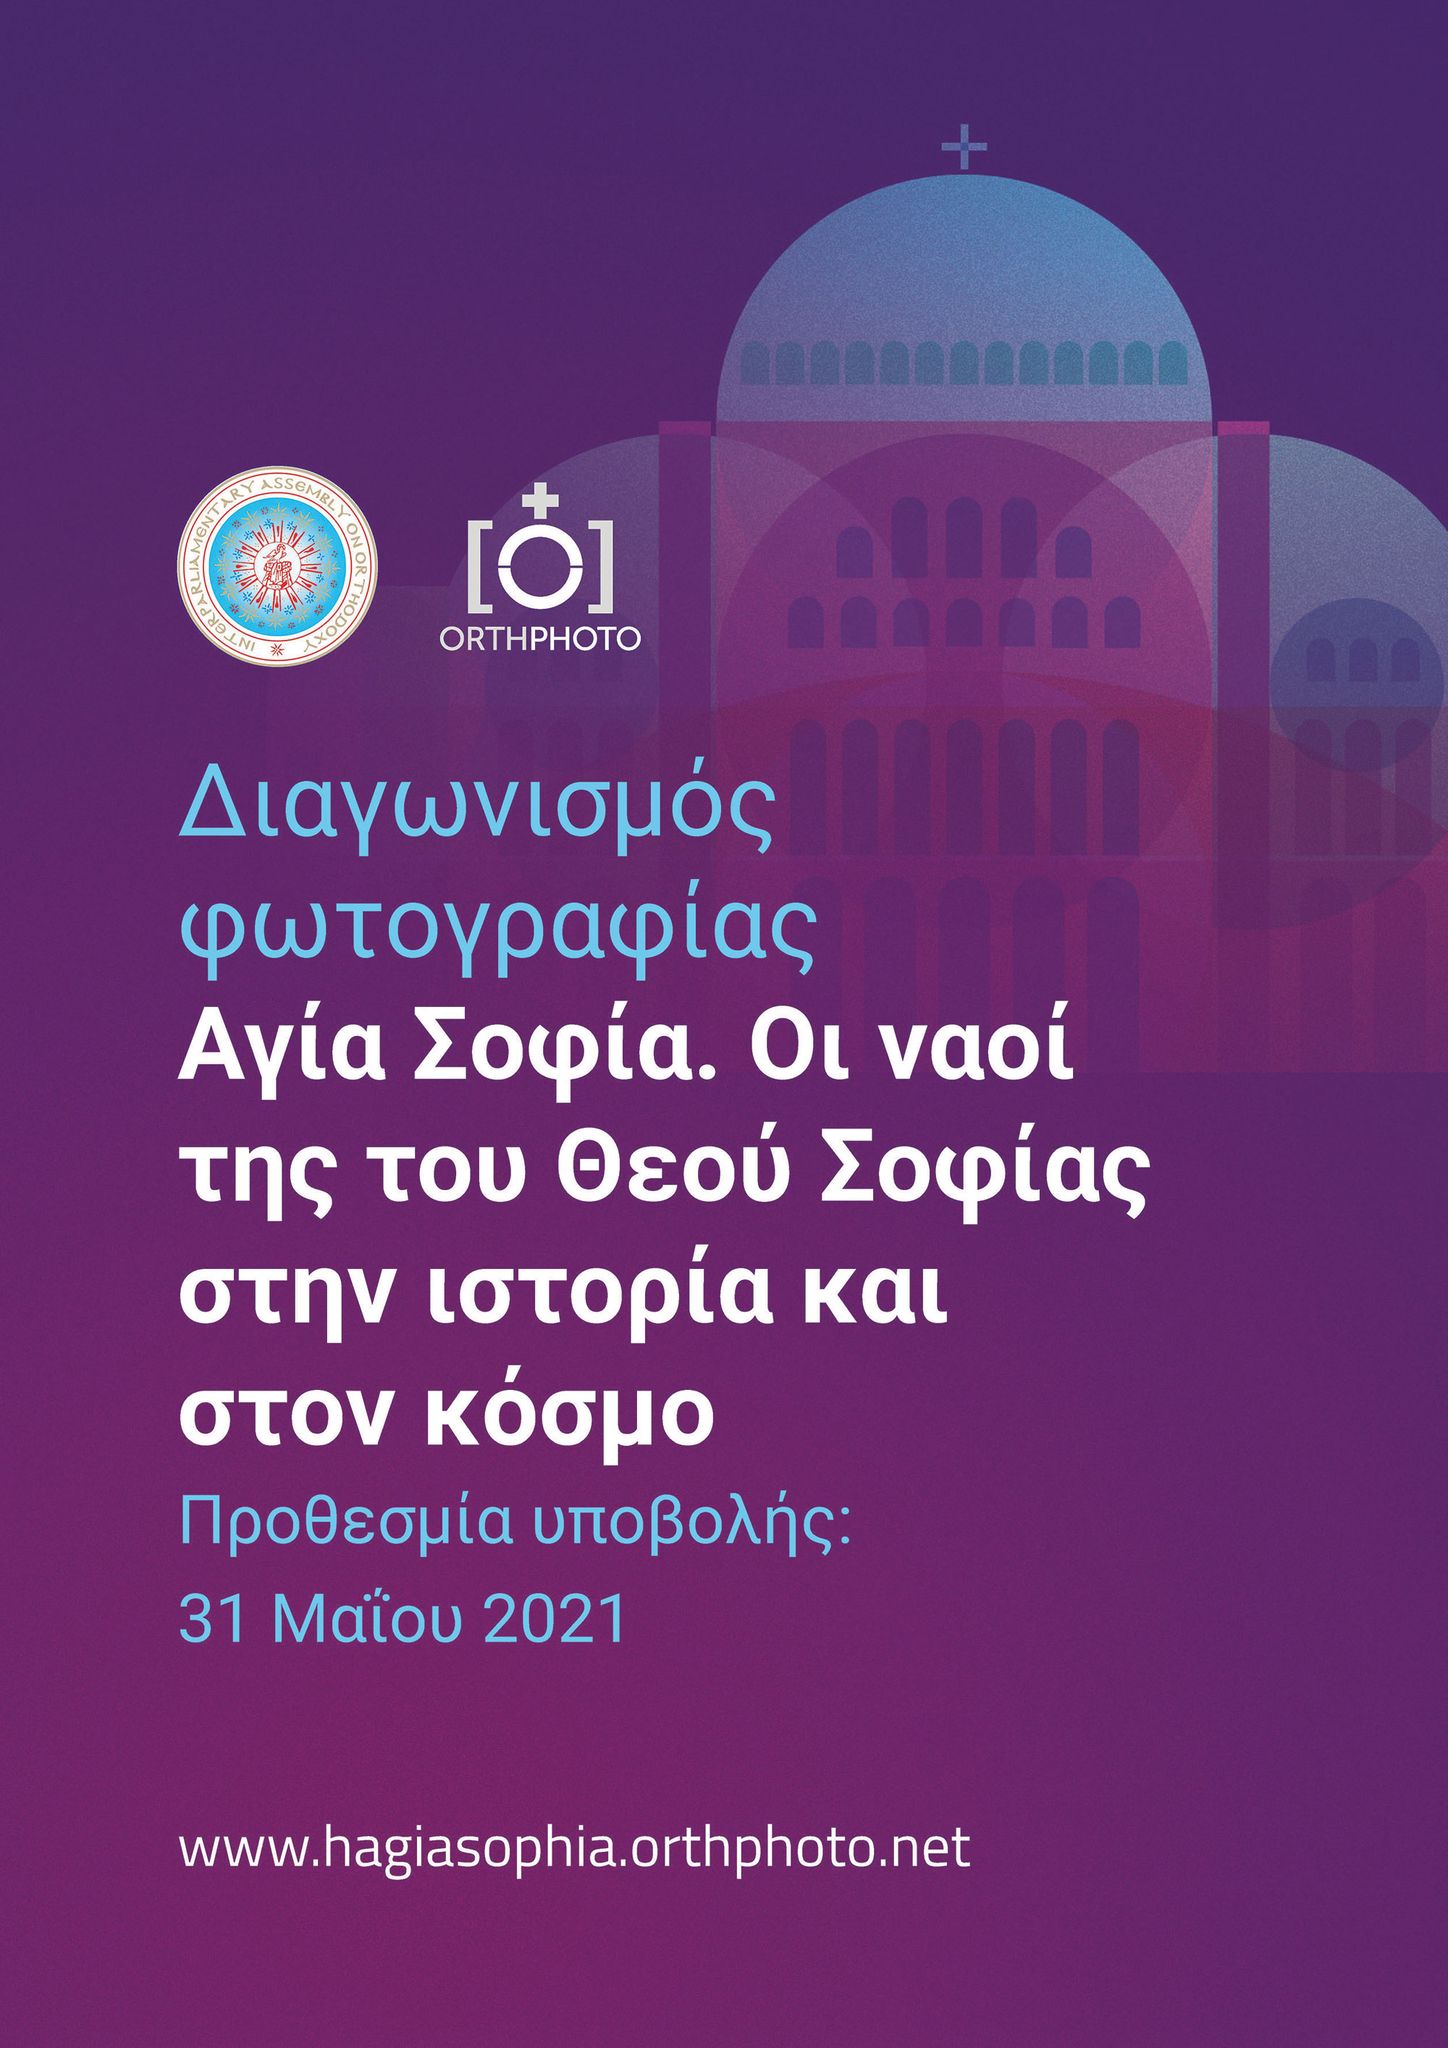 Χορηγός Επικοινωνίας του διαγωνισμού φωτογραφίας Αγία Σοφία. Οι ναοί της του Θεού Σοφίας στην ιστορία και στον κόσμο είναι και το Εκκλησιαστικό Ιστολόγιο Lavaron.com.gr (Προθεσμία υποβολής: 31 Μαΐου 2021)